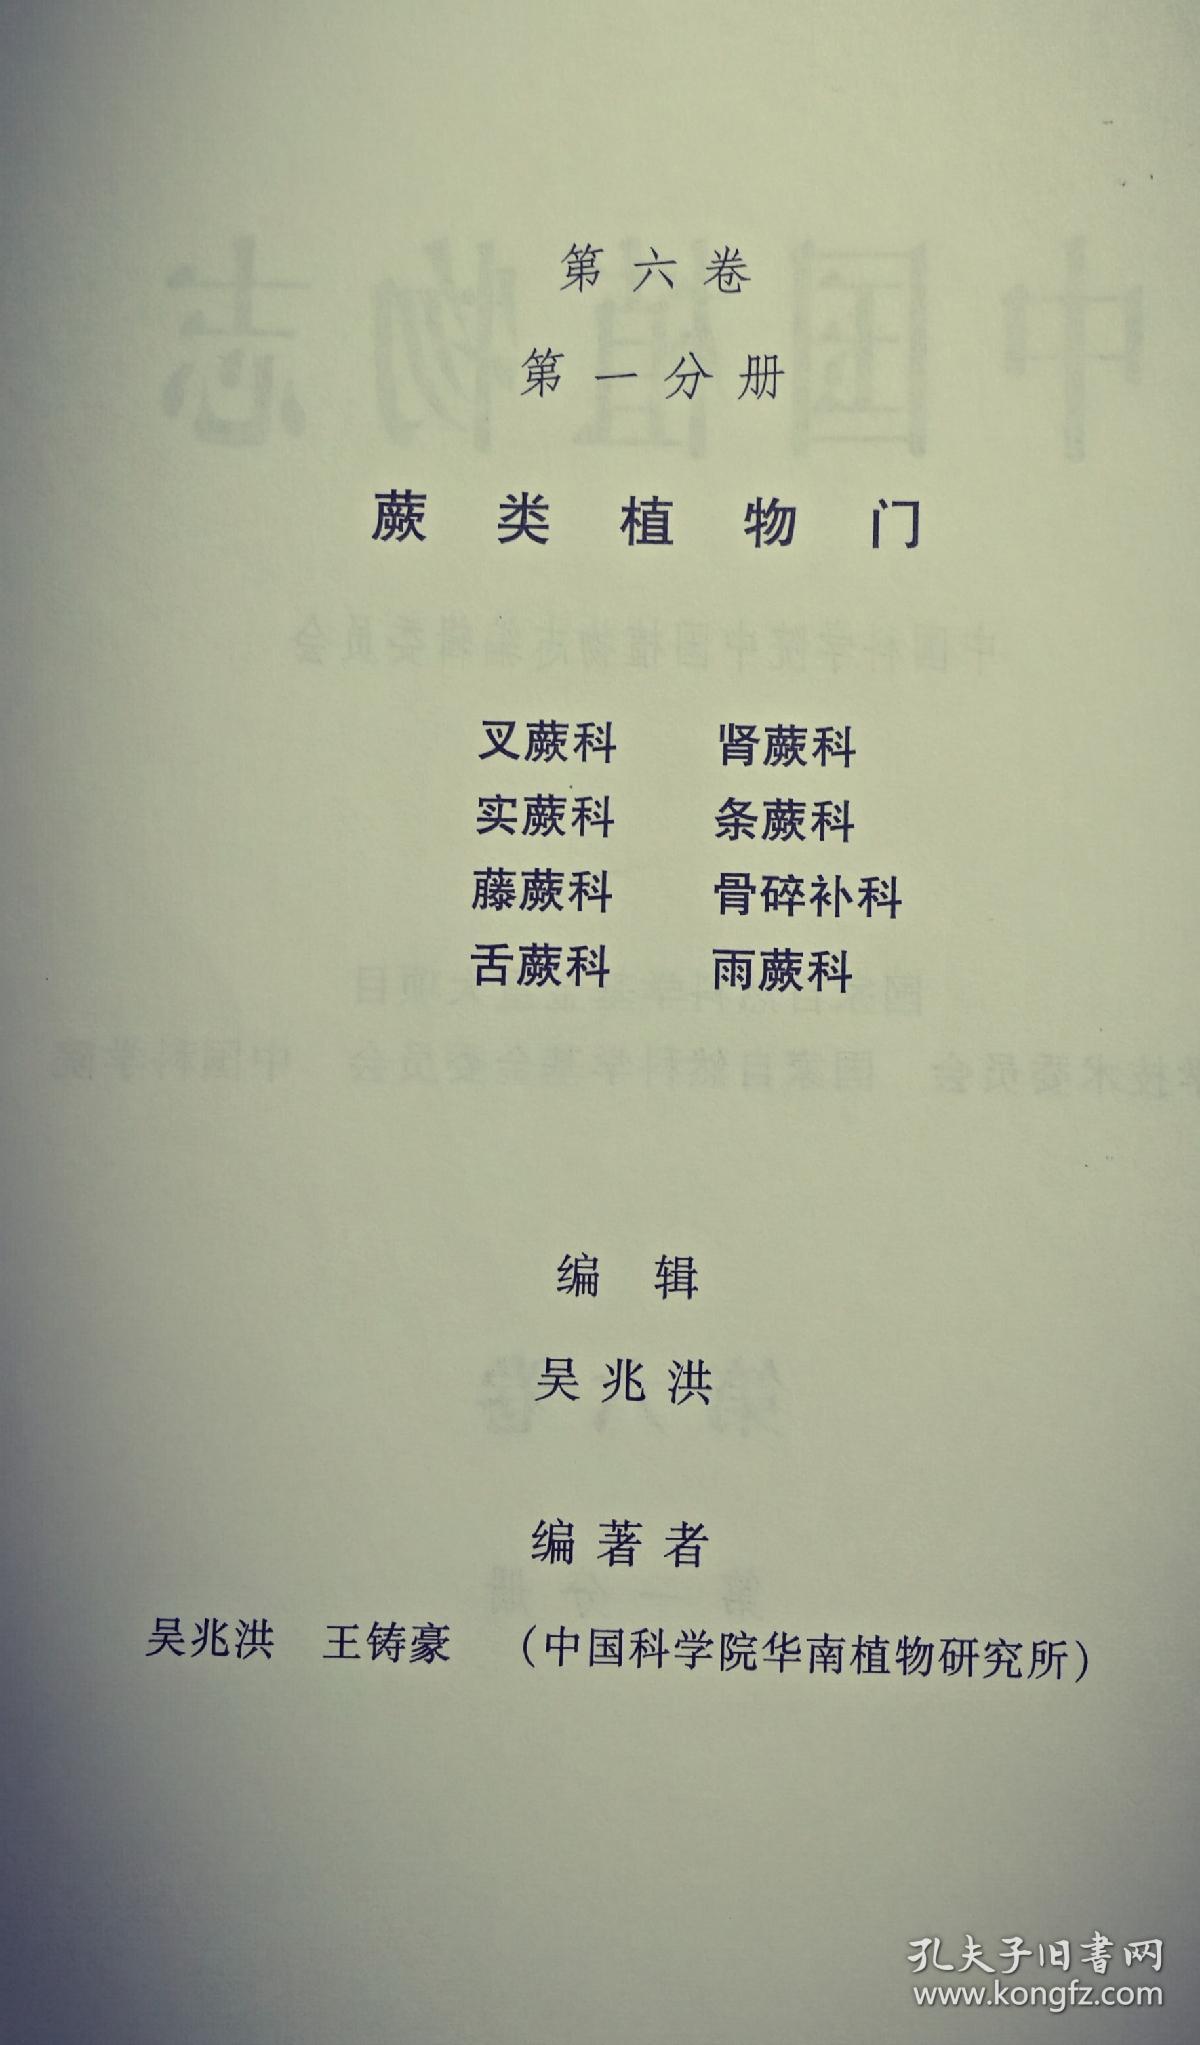 中国植物志、第六卷、第一分册、第二分册合售